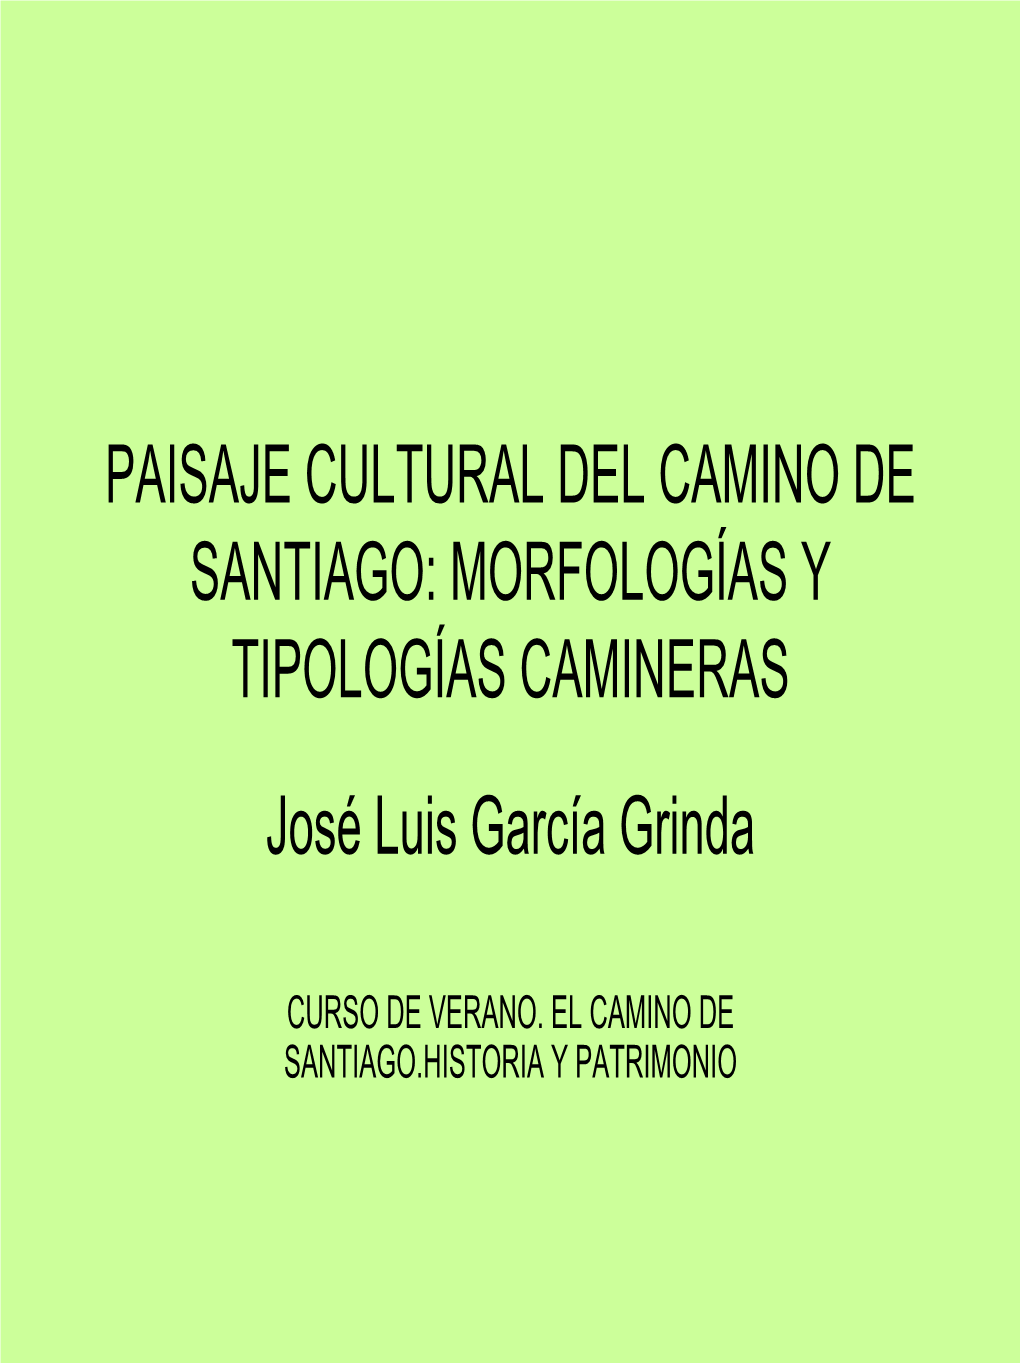 PAISAJE CULTURAL DEL CAMINO DE SANTIAGO: MORFOLOGÍAS Y TIPOLOGÍAS CAMINERAS José Luis García Grinda